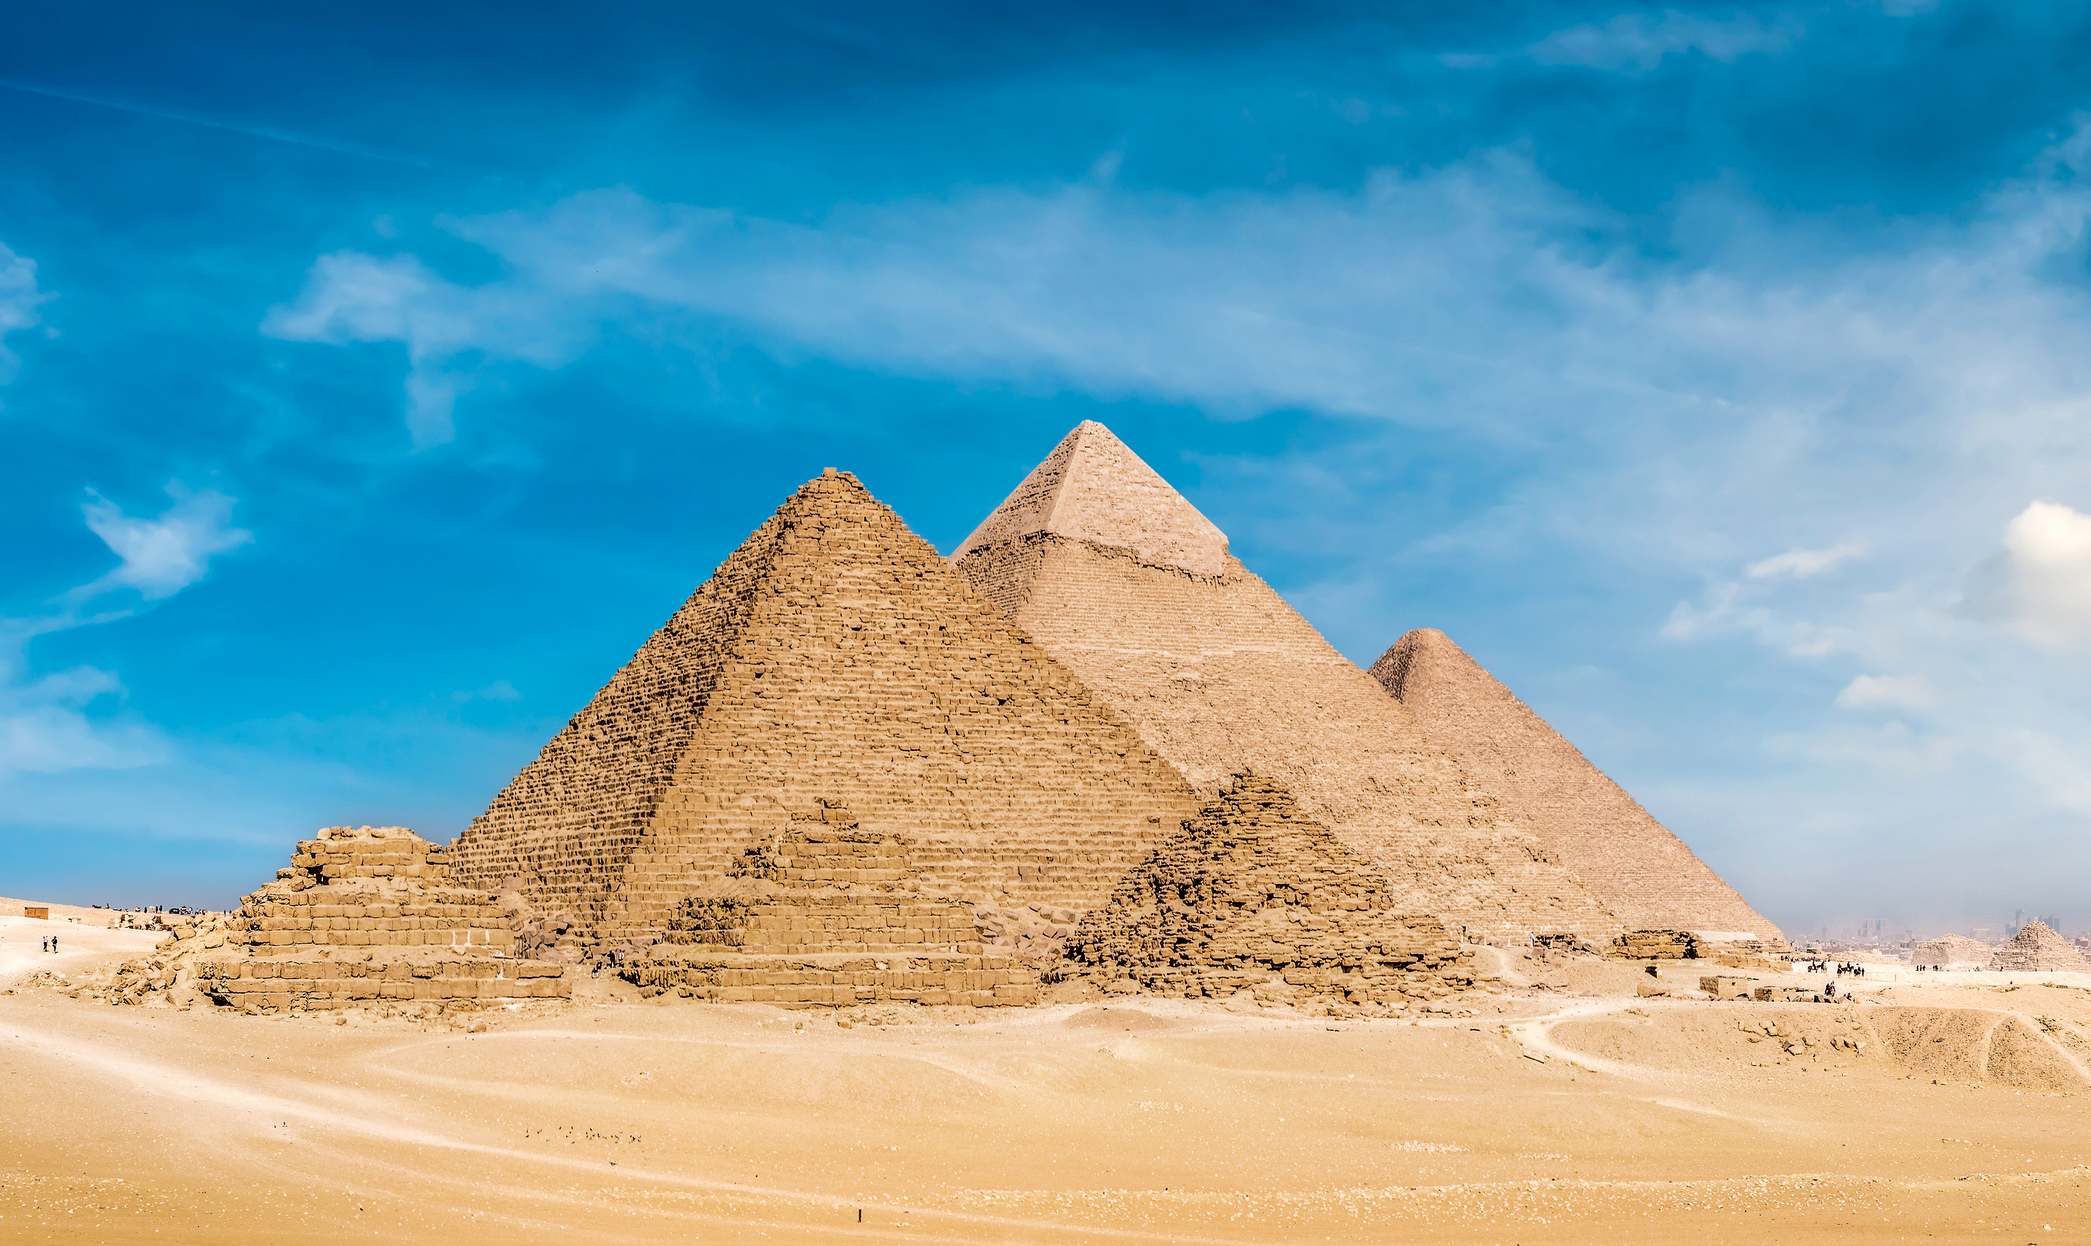 pyramids Giza, Cairo, ອີຢິບ, ອາຟຣິກາ. ທັດສະນະຂອງ pyramids ຈາກພູພຽງ Giza © ສິນເຊື່ອຮູບພາບ: Feili Chen | ອະນຸຍາດຈາກ Dreamstime.Com (ບັນນາທິການ/ພາບຖ່າຍນຳໃຊ້ທາງການຄ້າ)